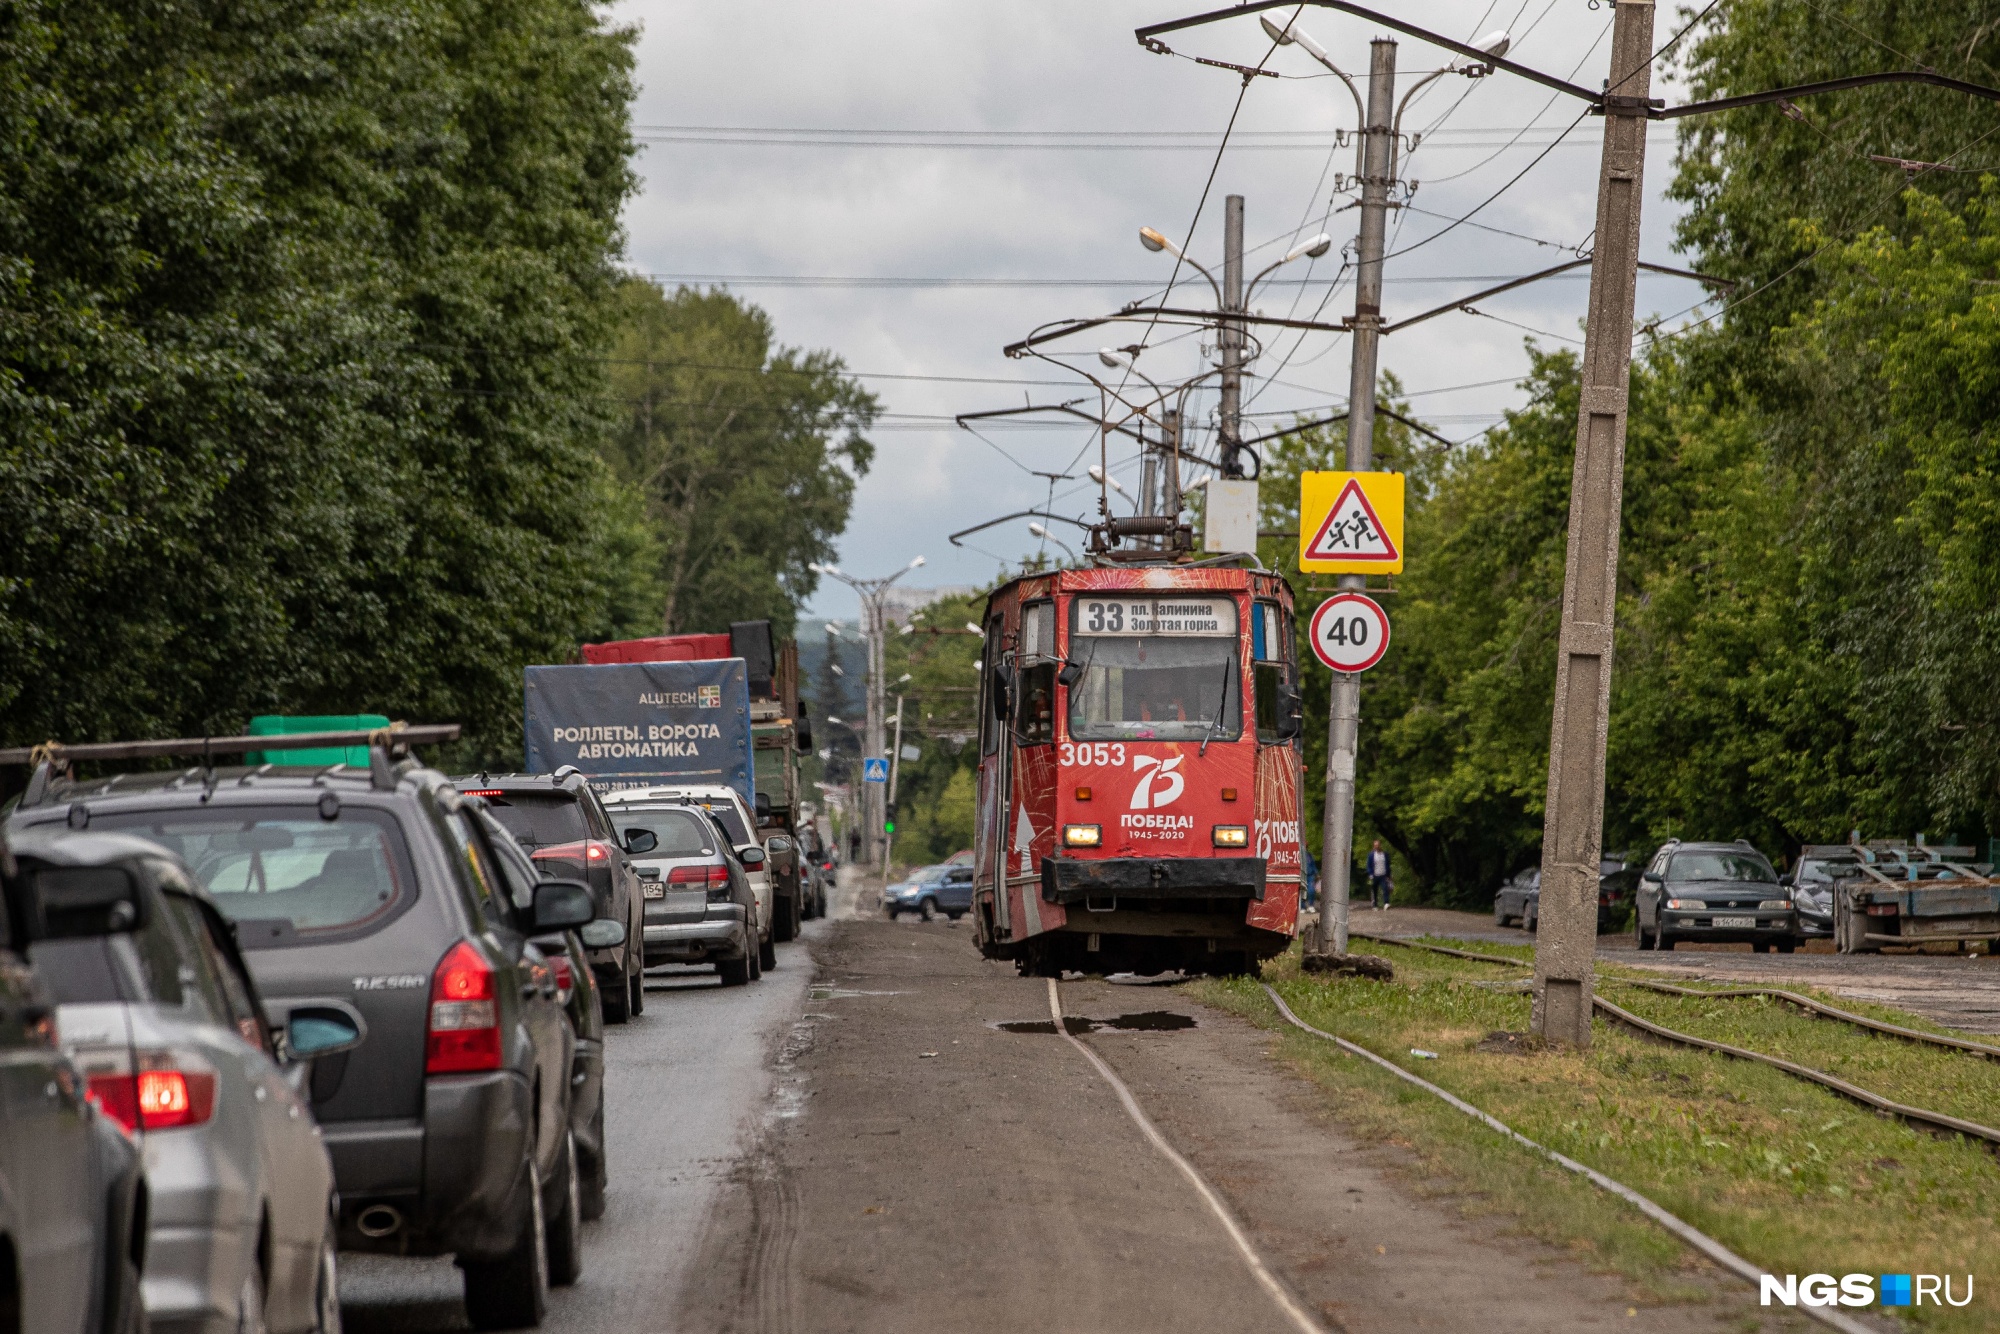 Рельсы уходят в село: жителям Каменки пообещали трамвай, но они не рады — и вот почему